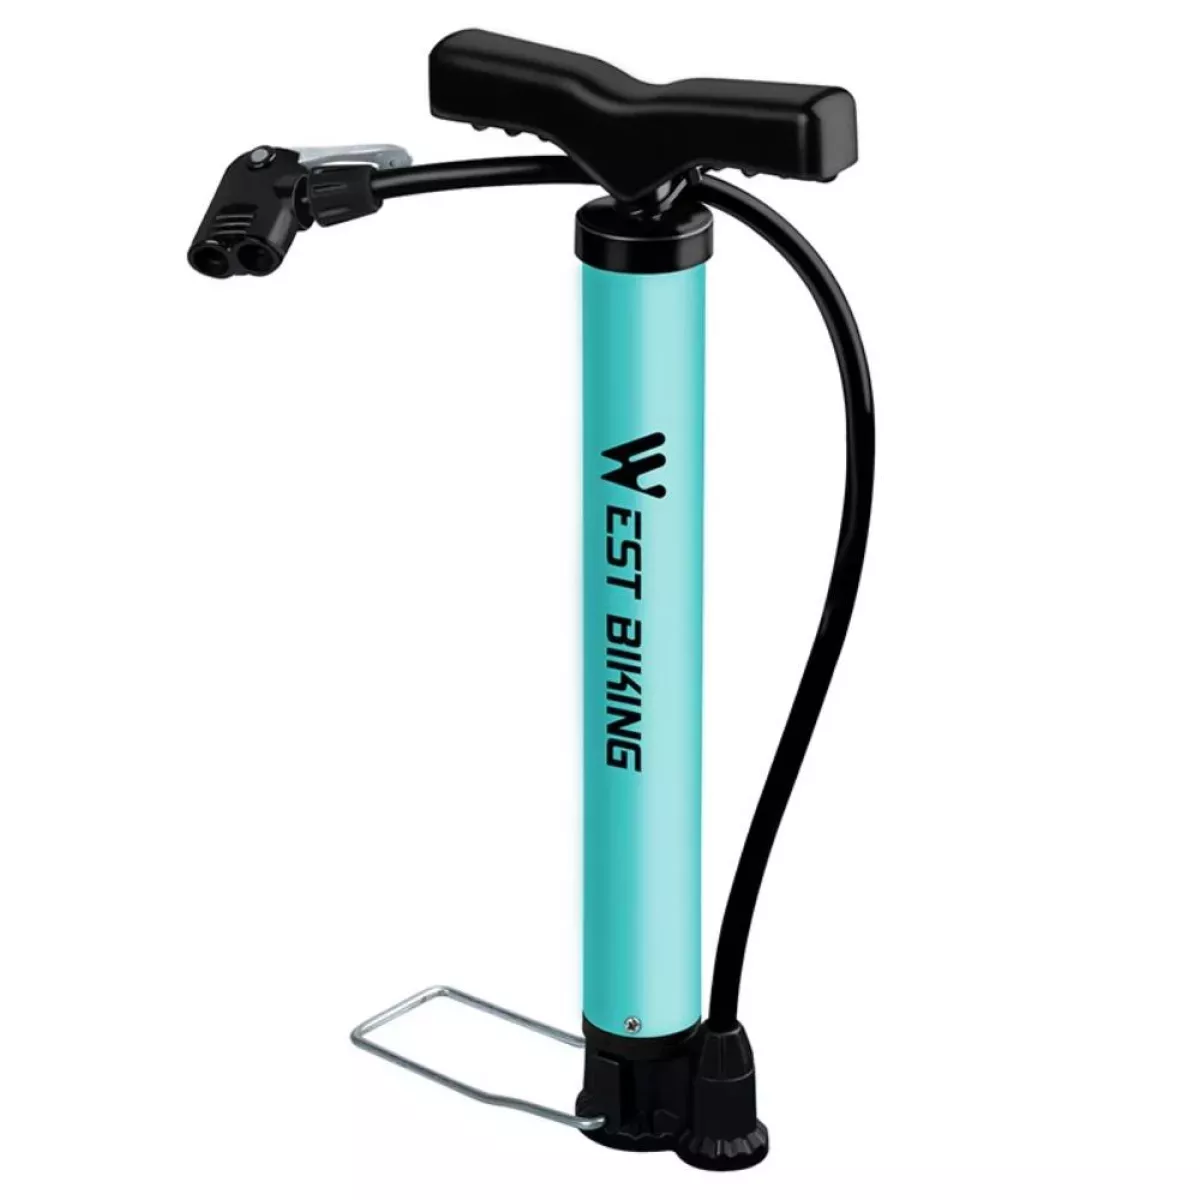 #3 - WEST BIKING - Cykelpumpe / Bold pumpe - Med håndtag og fodstøtte - i Aluminium